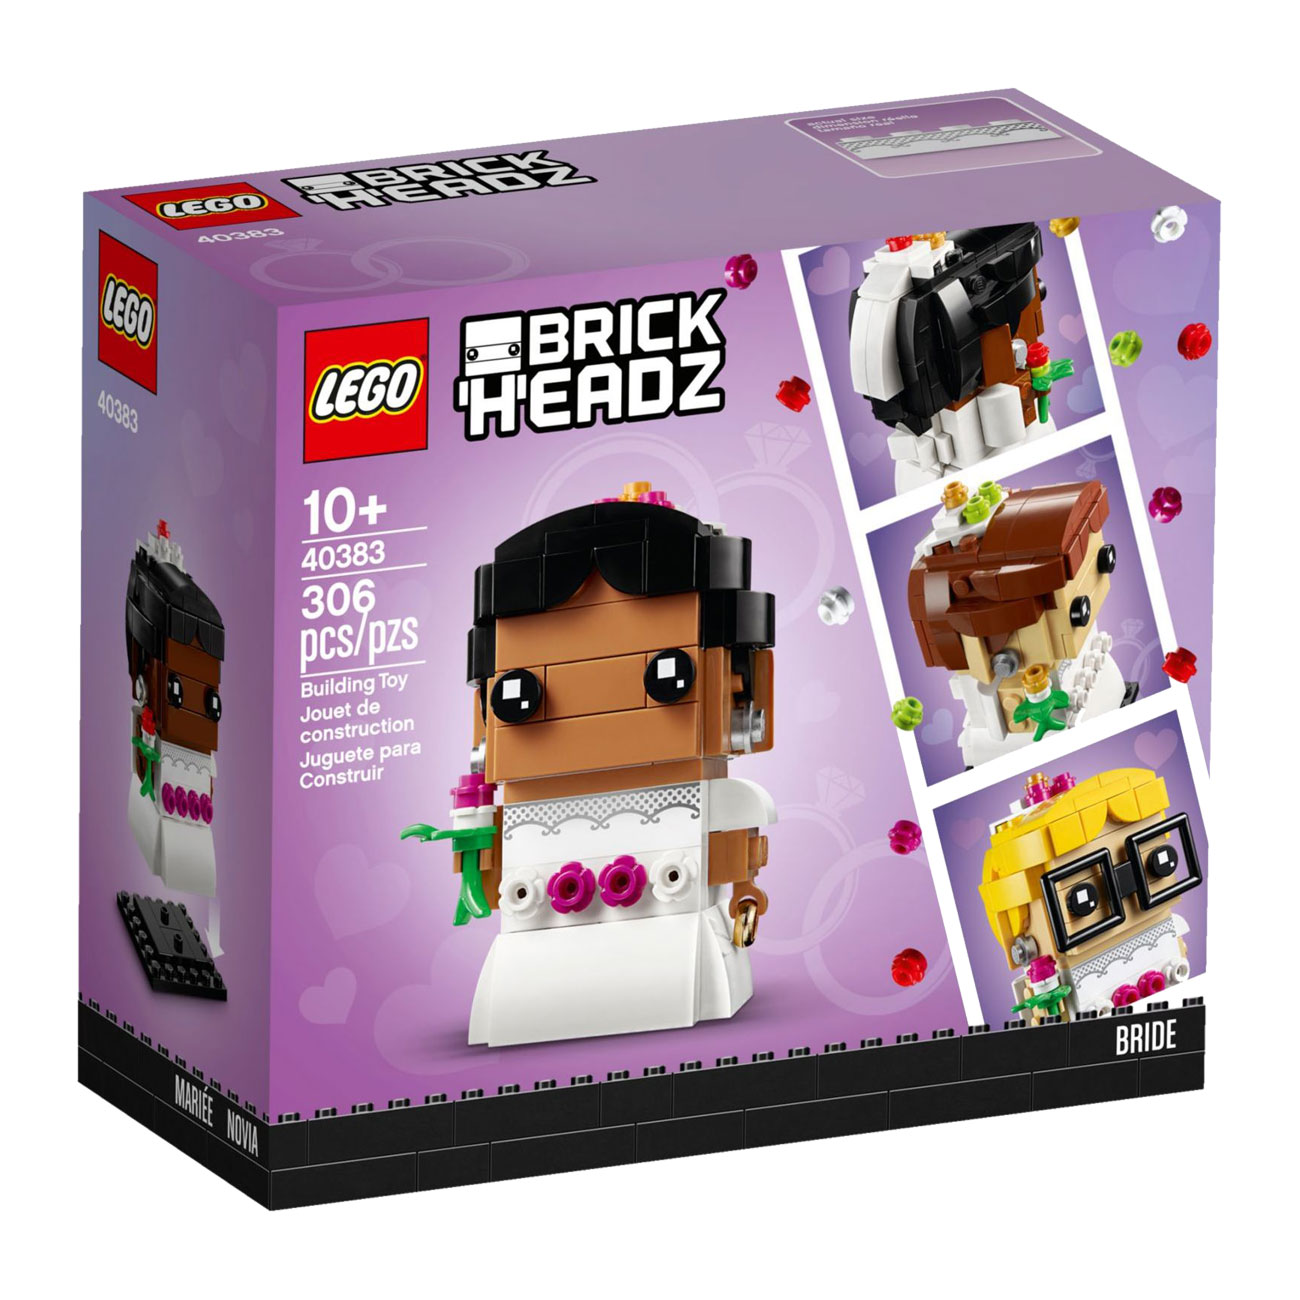 LEGO® BrickHeadz 40383 Braut günstig kaufen | brickstore.at